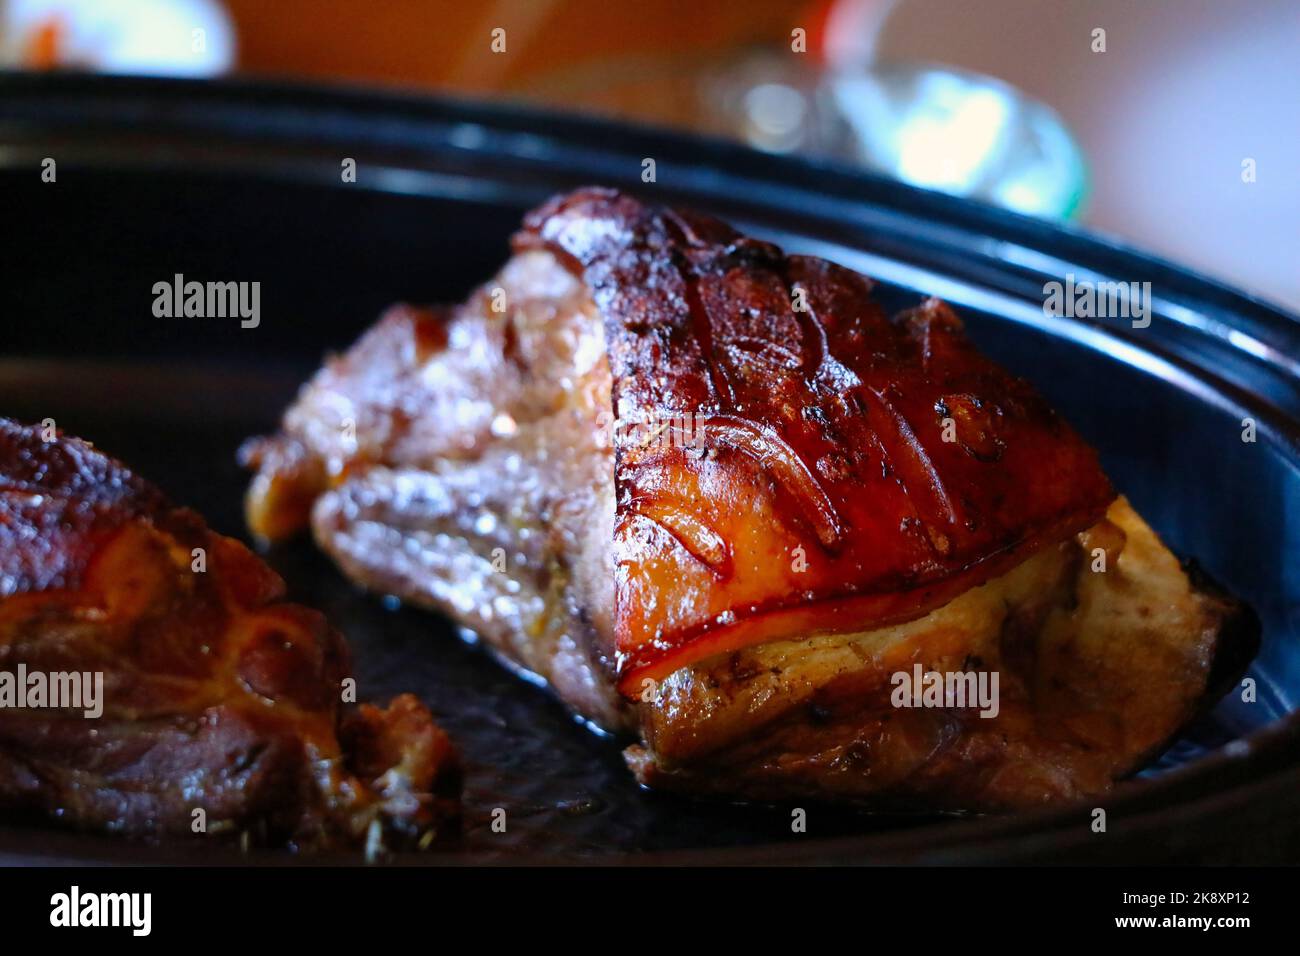 Eine malerische Aussicht auf köstlich gegrilltes Fleisch, das auf einer schwarzen Pfanne serviert wird Stockfoto